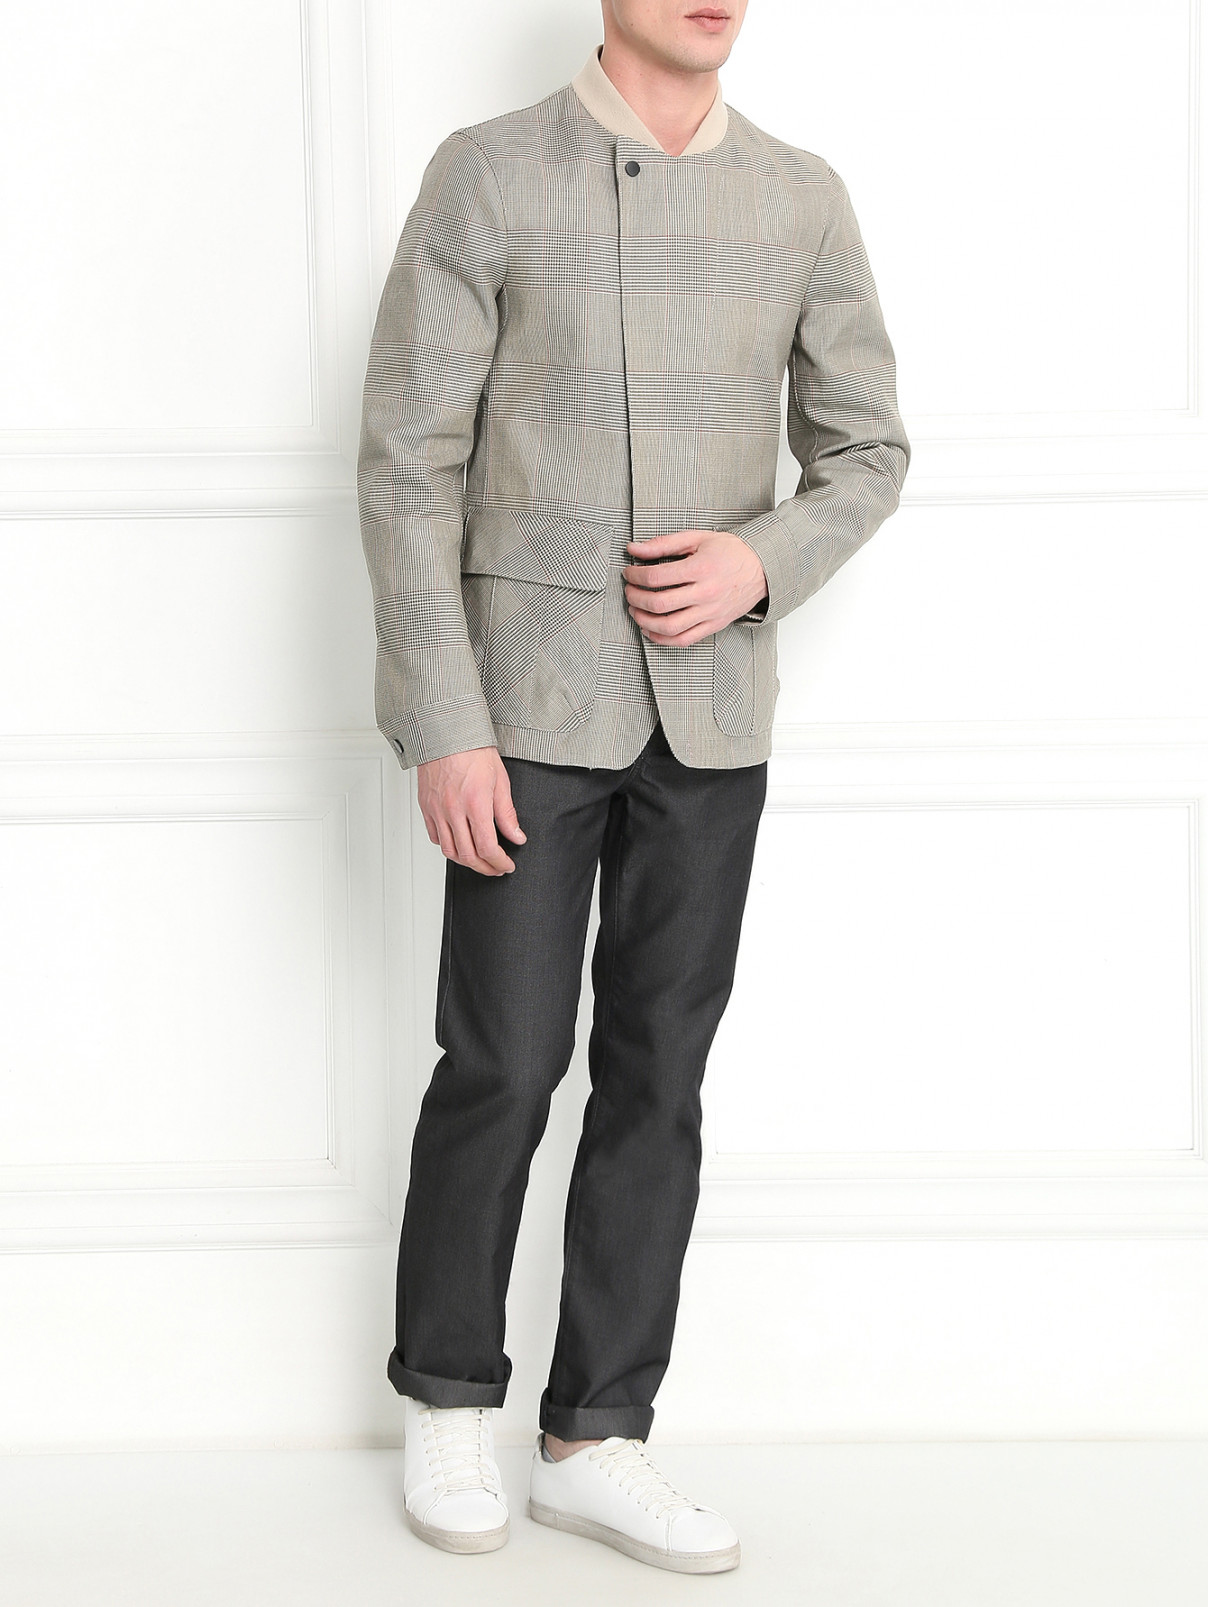 Куртка из хлопка и шерсти с узором "клетка" Emporio Armani  –  Модель Общий вид  – Цвет:  Коричневый